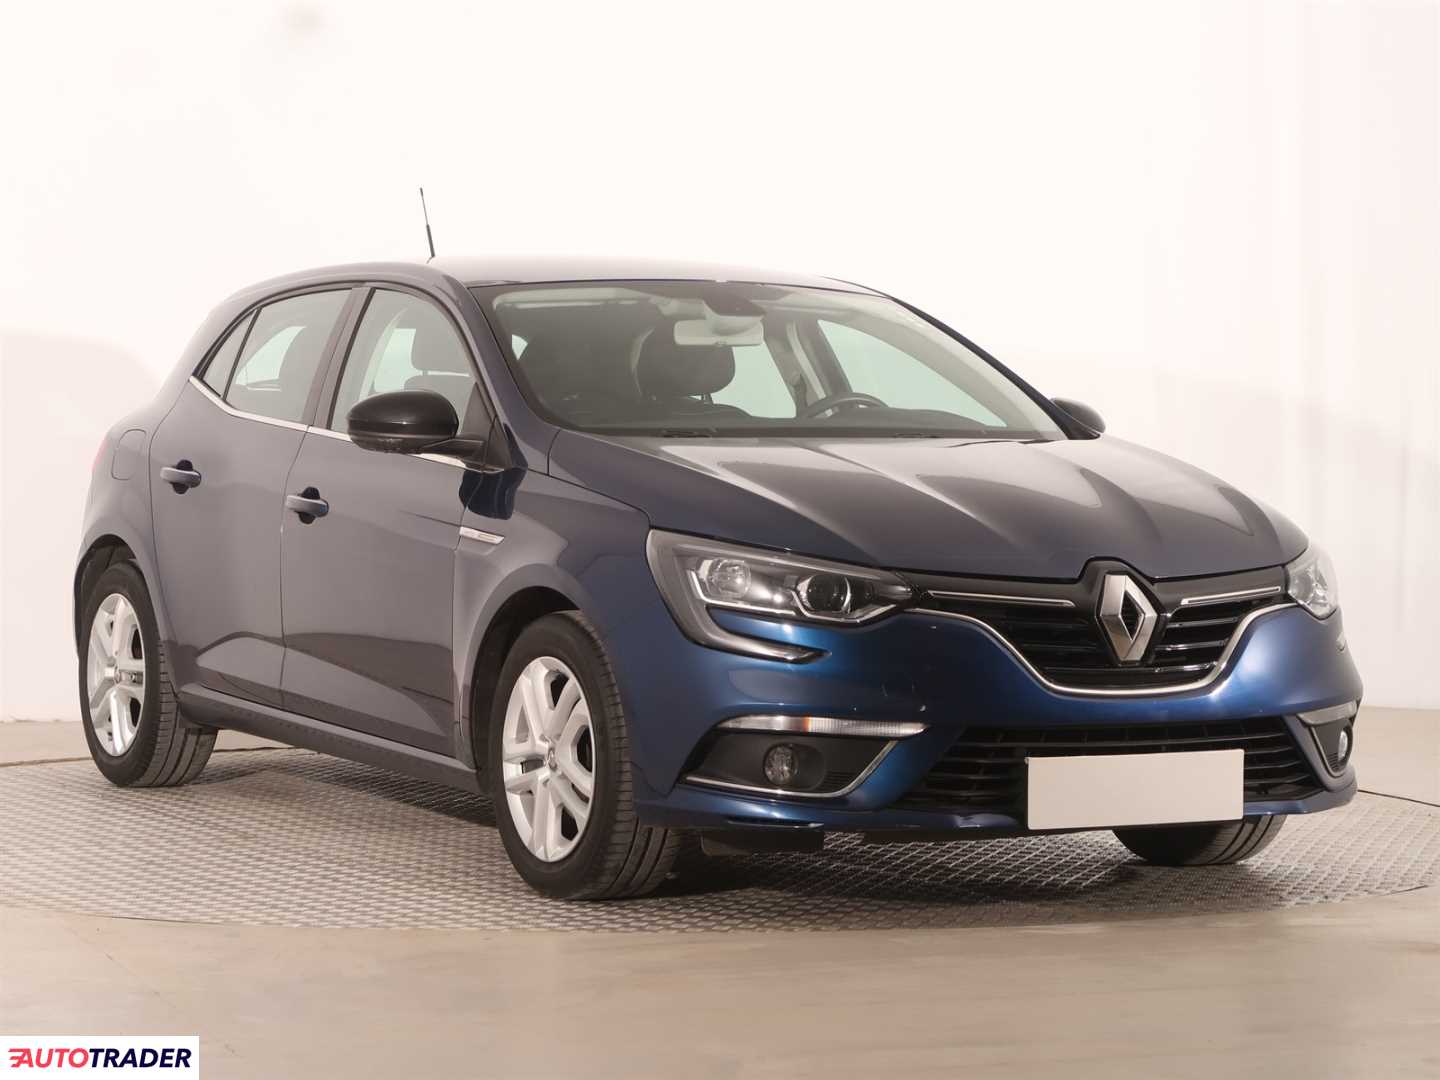 Renault Megane 2018 1.2 130 KM